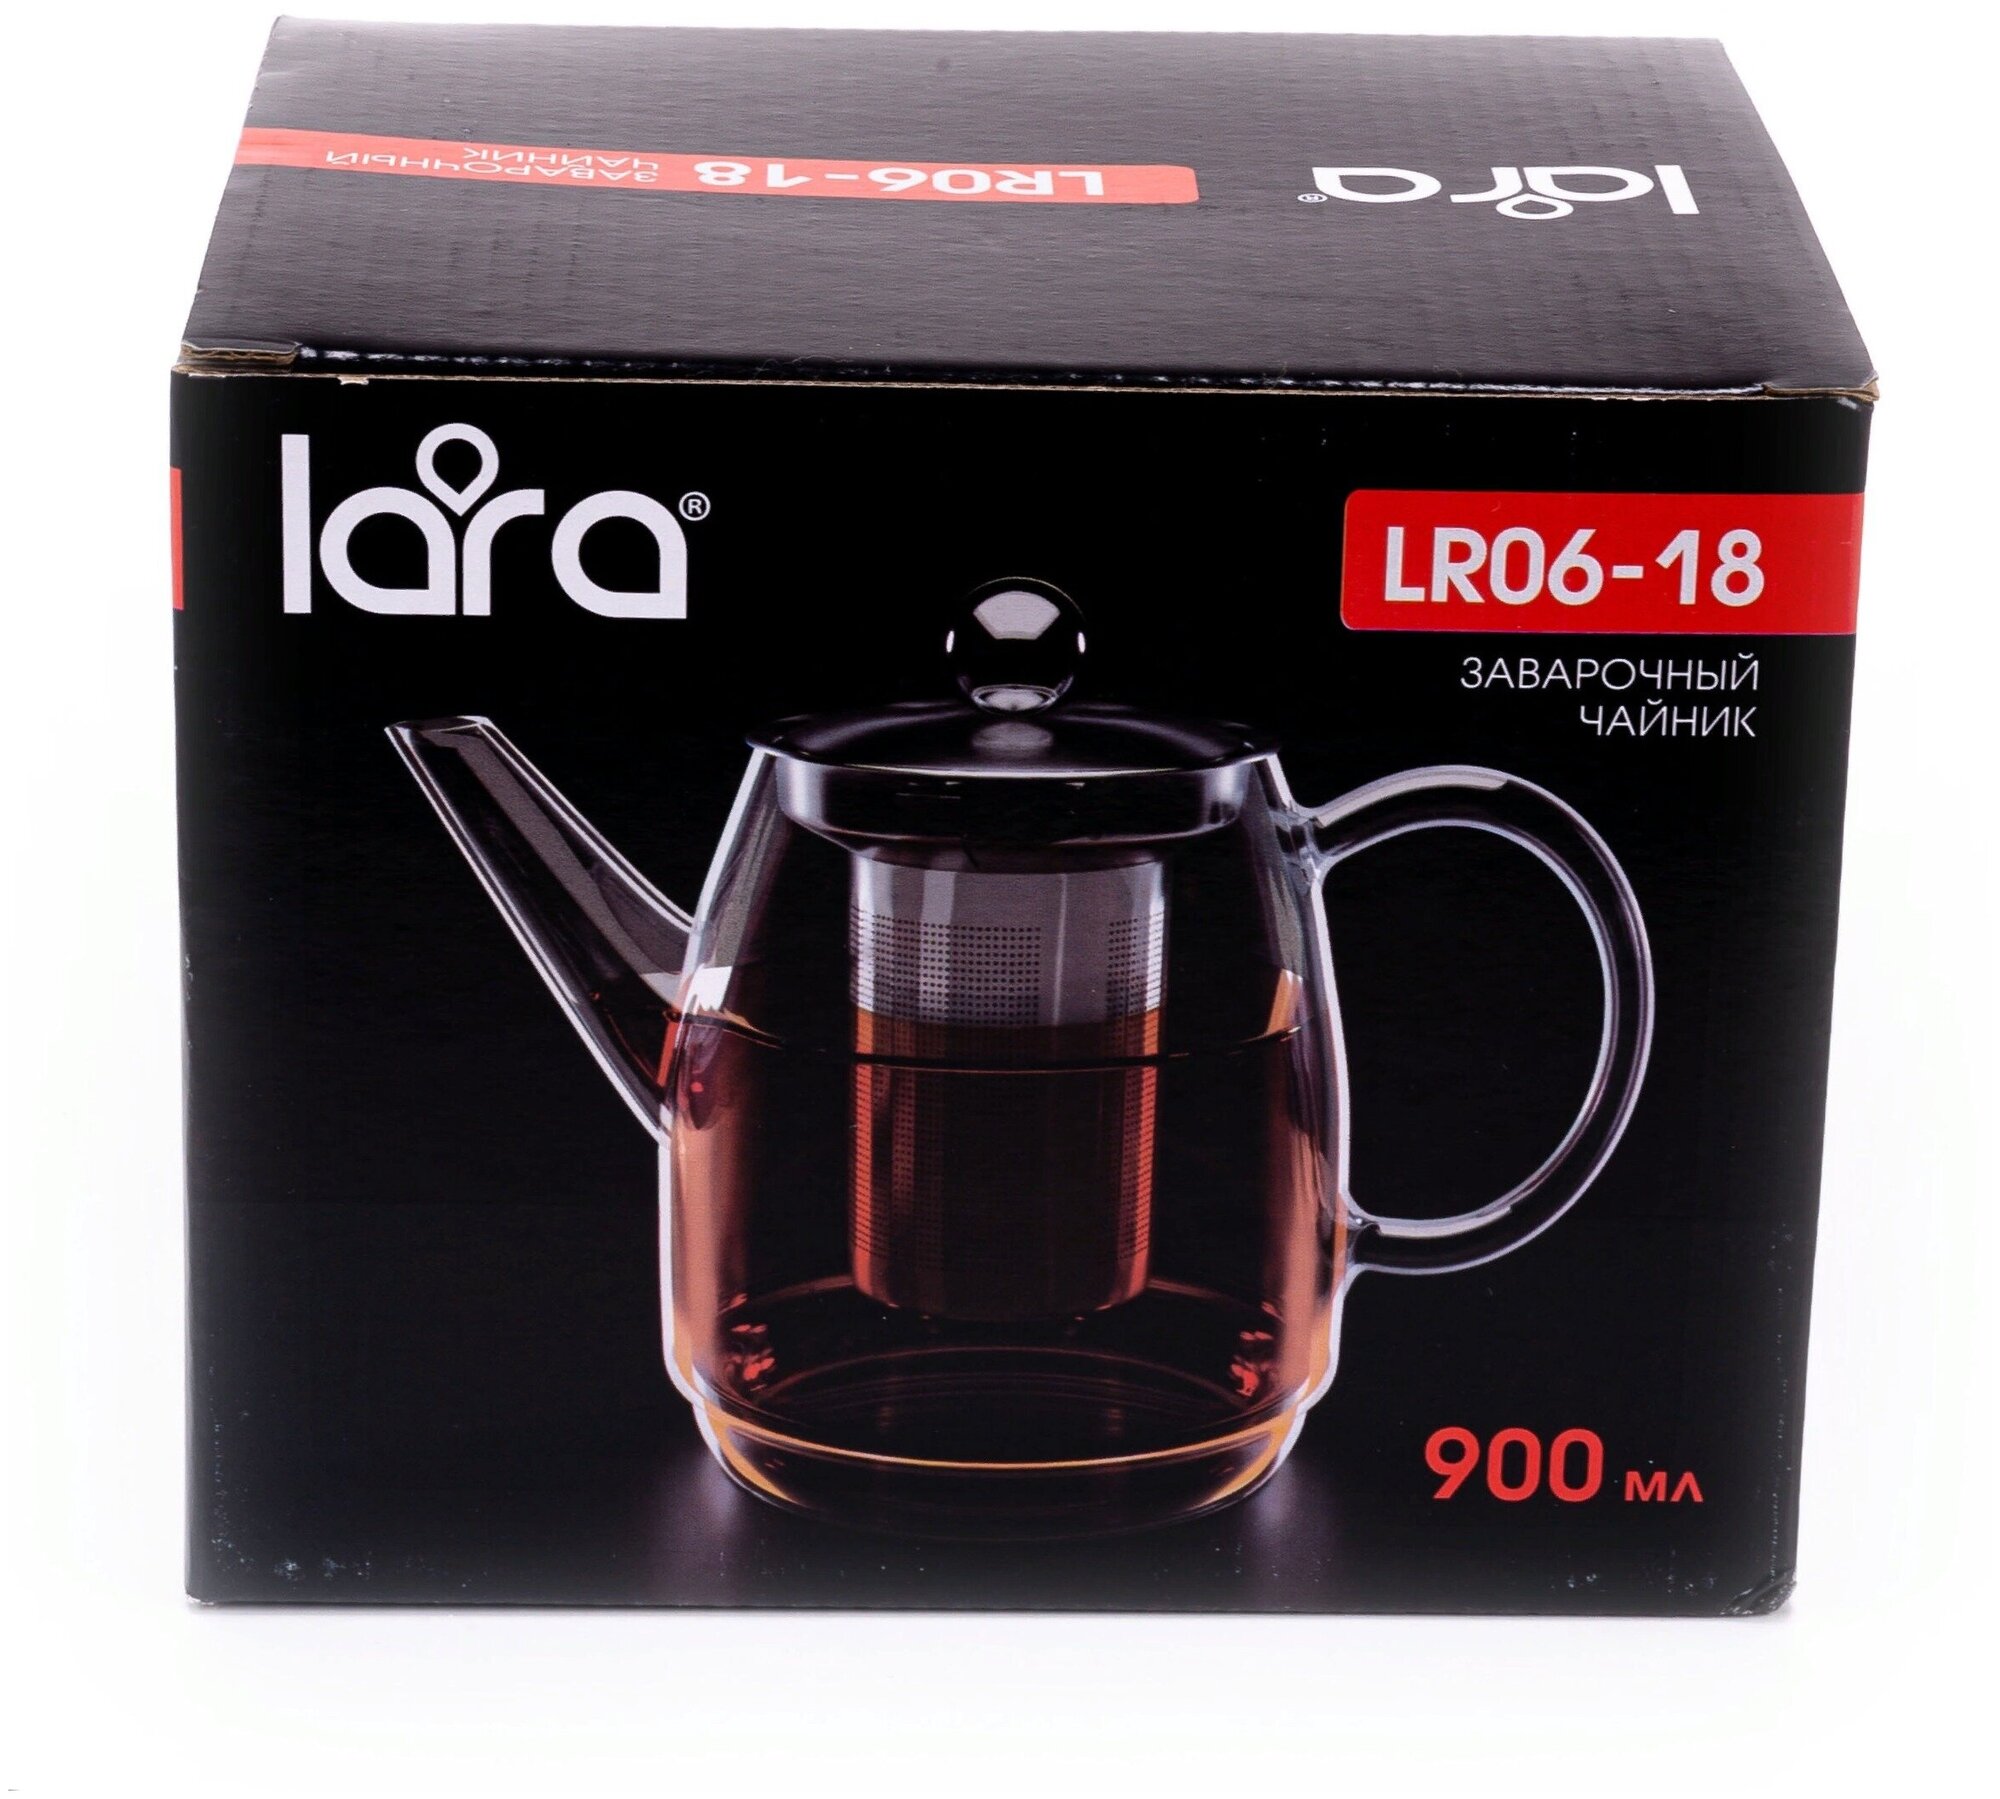 LR06-18 Заварочный чайник LARA 900мл боросиликатное стекло стальной фильтр и крышка